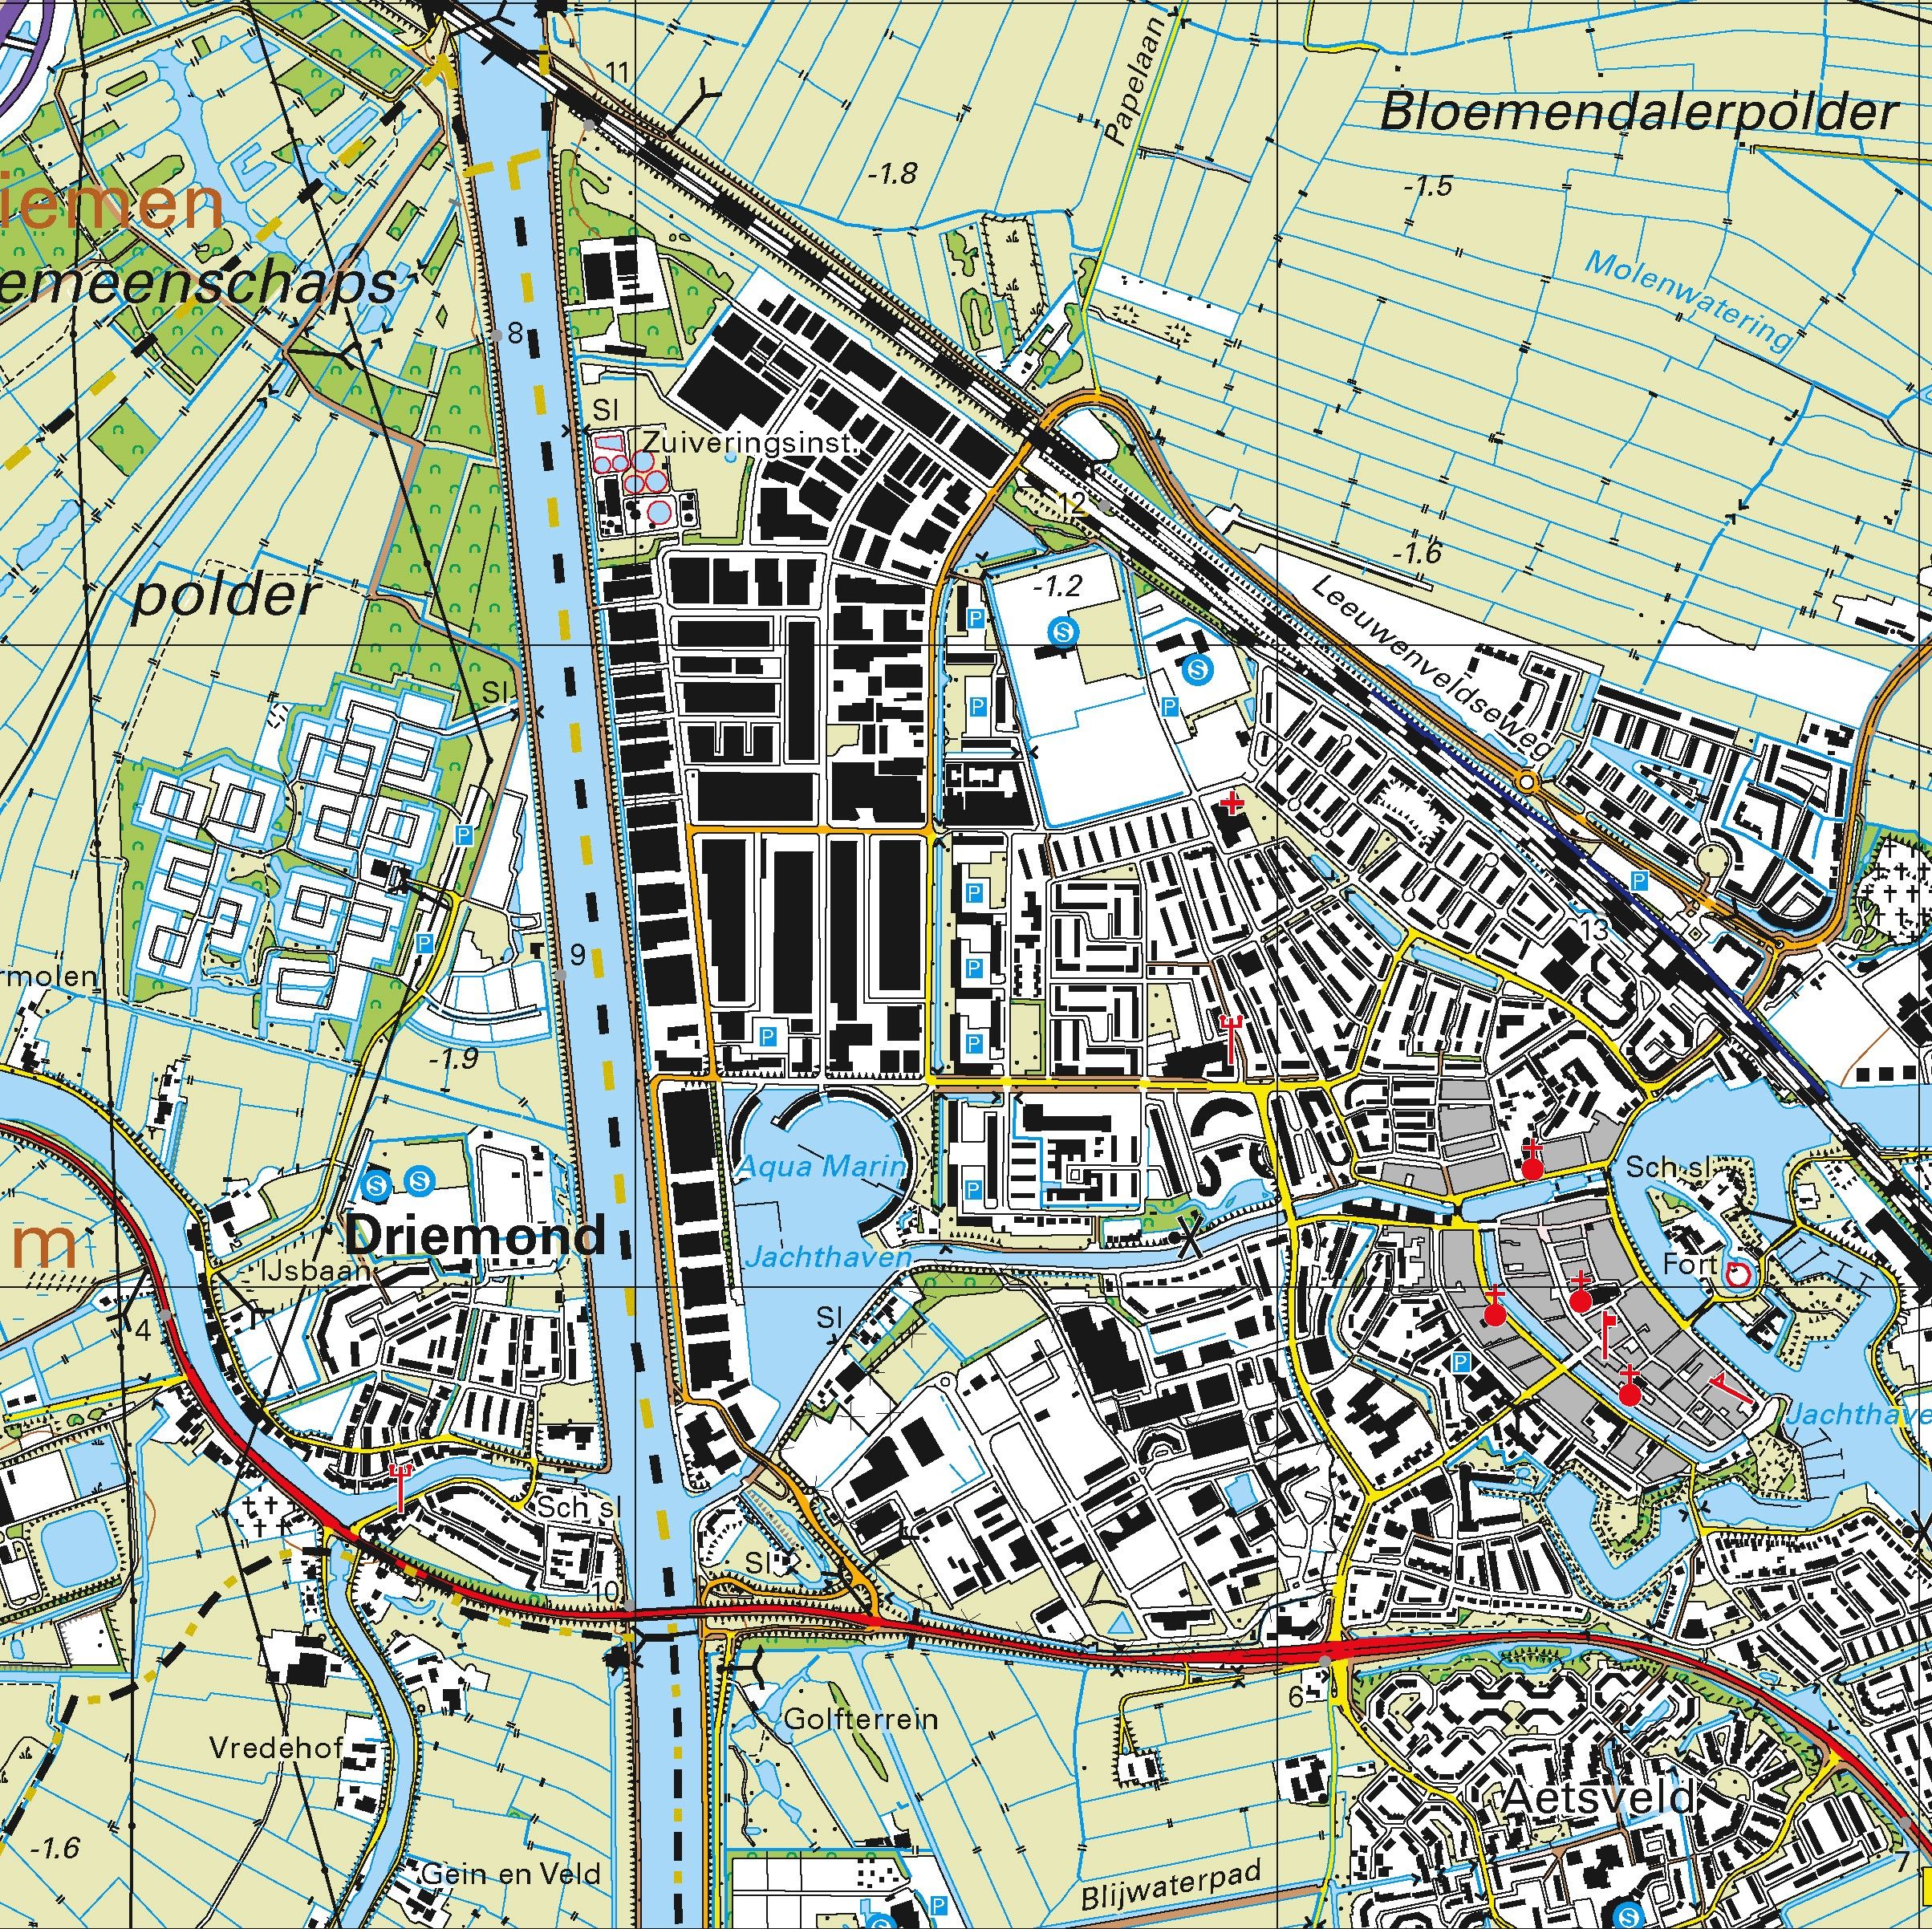 Topografische kaart schaal 1:25.000 (Amsterdam, Abcoude, Weesp, Bussum, Naarden, Breukelen)